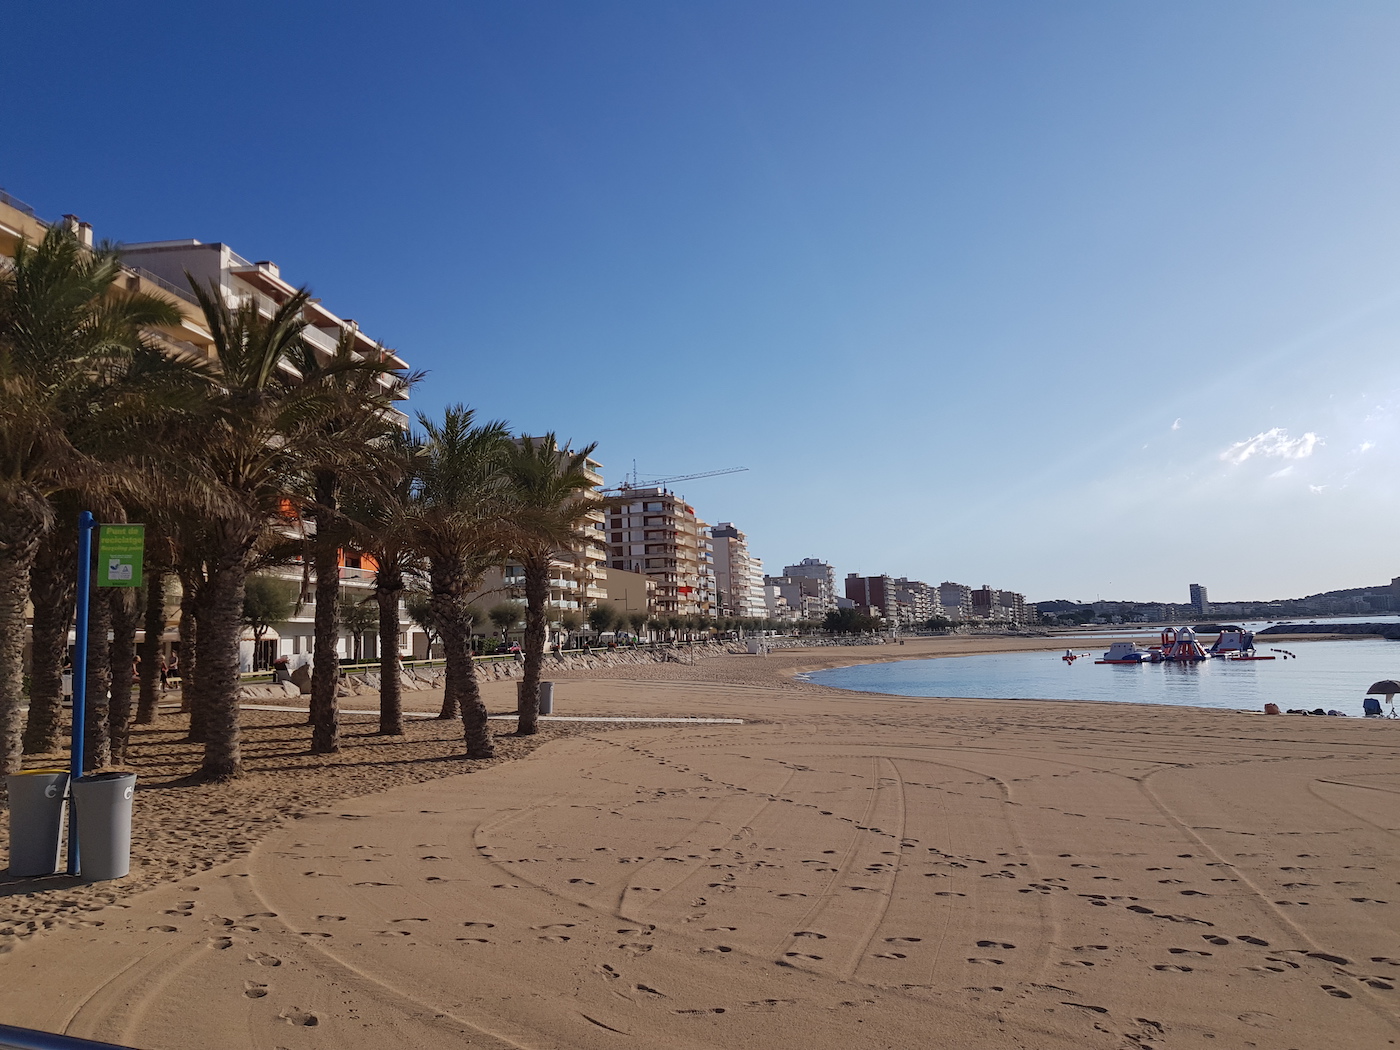 Palamos Spanje strand costa brava